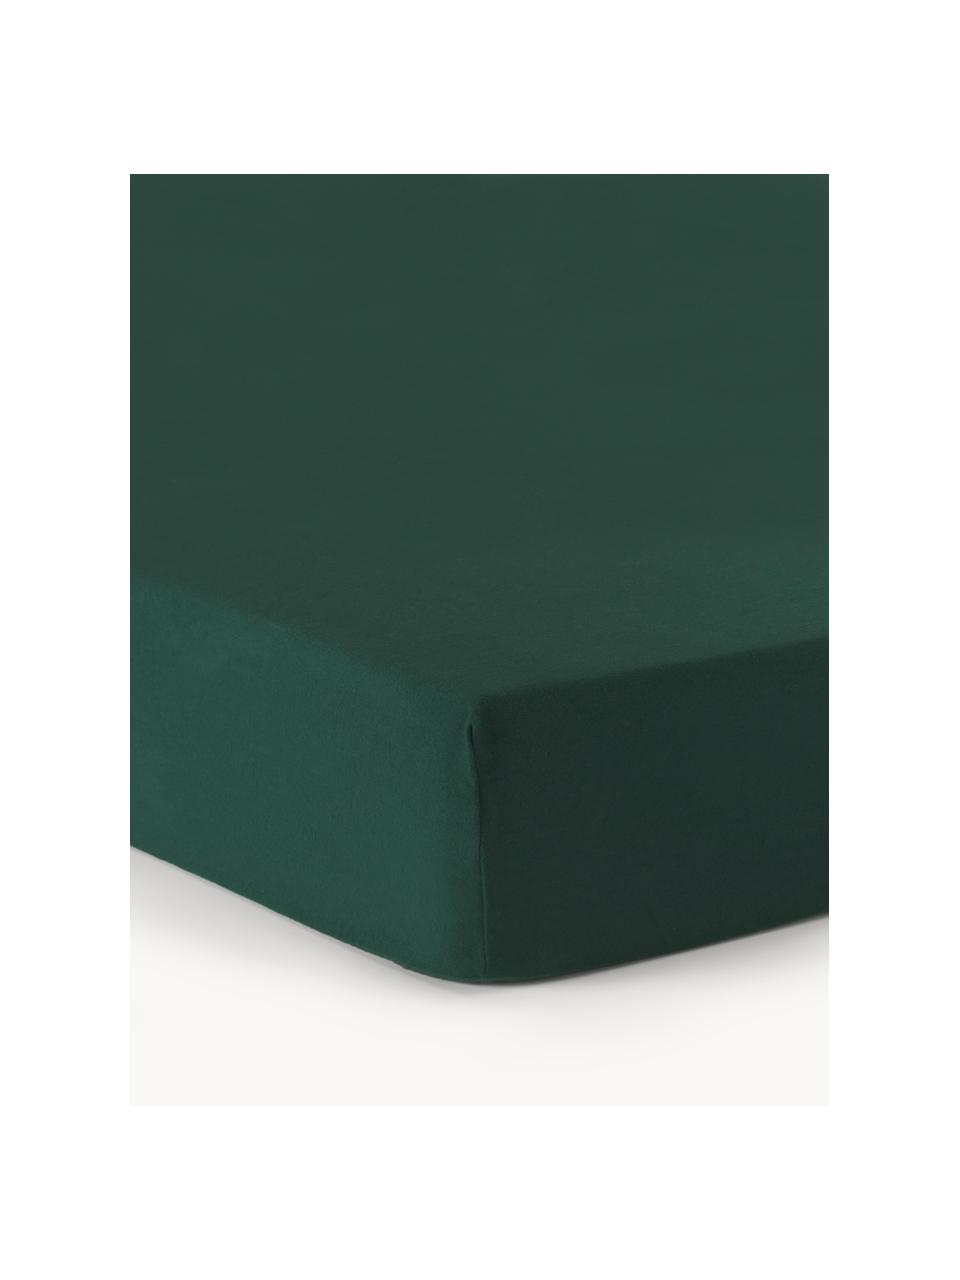 Sábana bajera cubrecolchón de franela Biba, Verde oscuro, Cama 200 cm (200 x 200 x 15 cm)